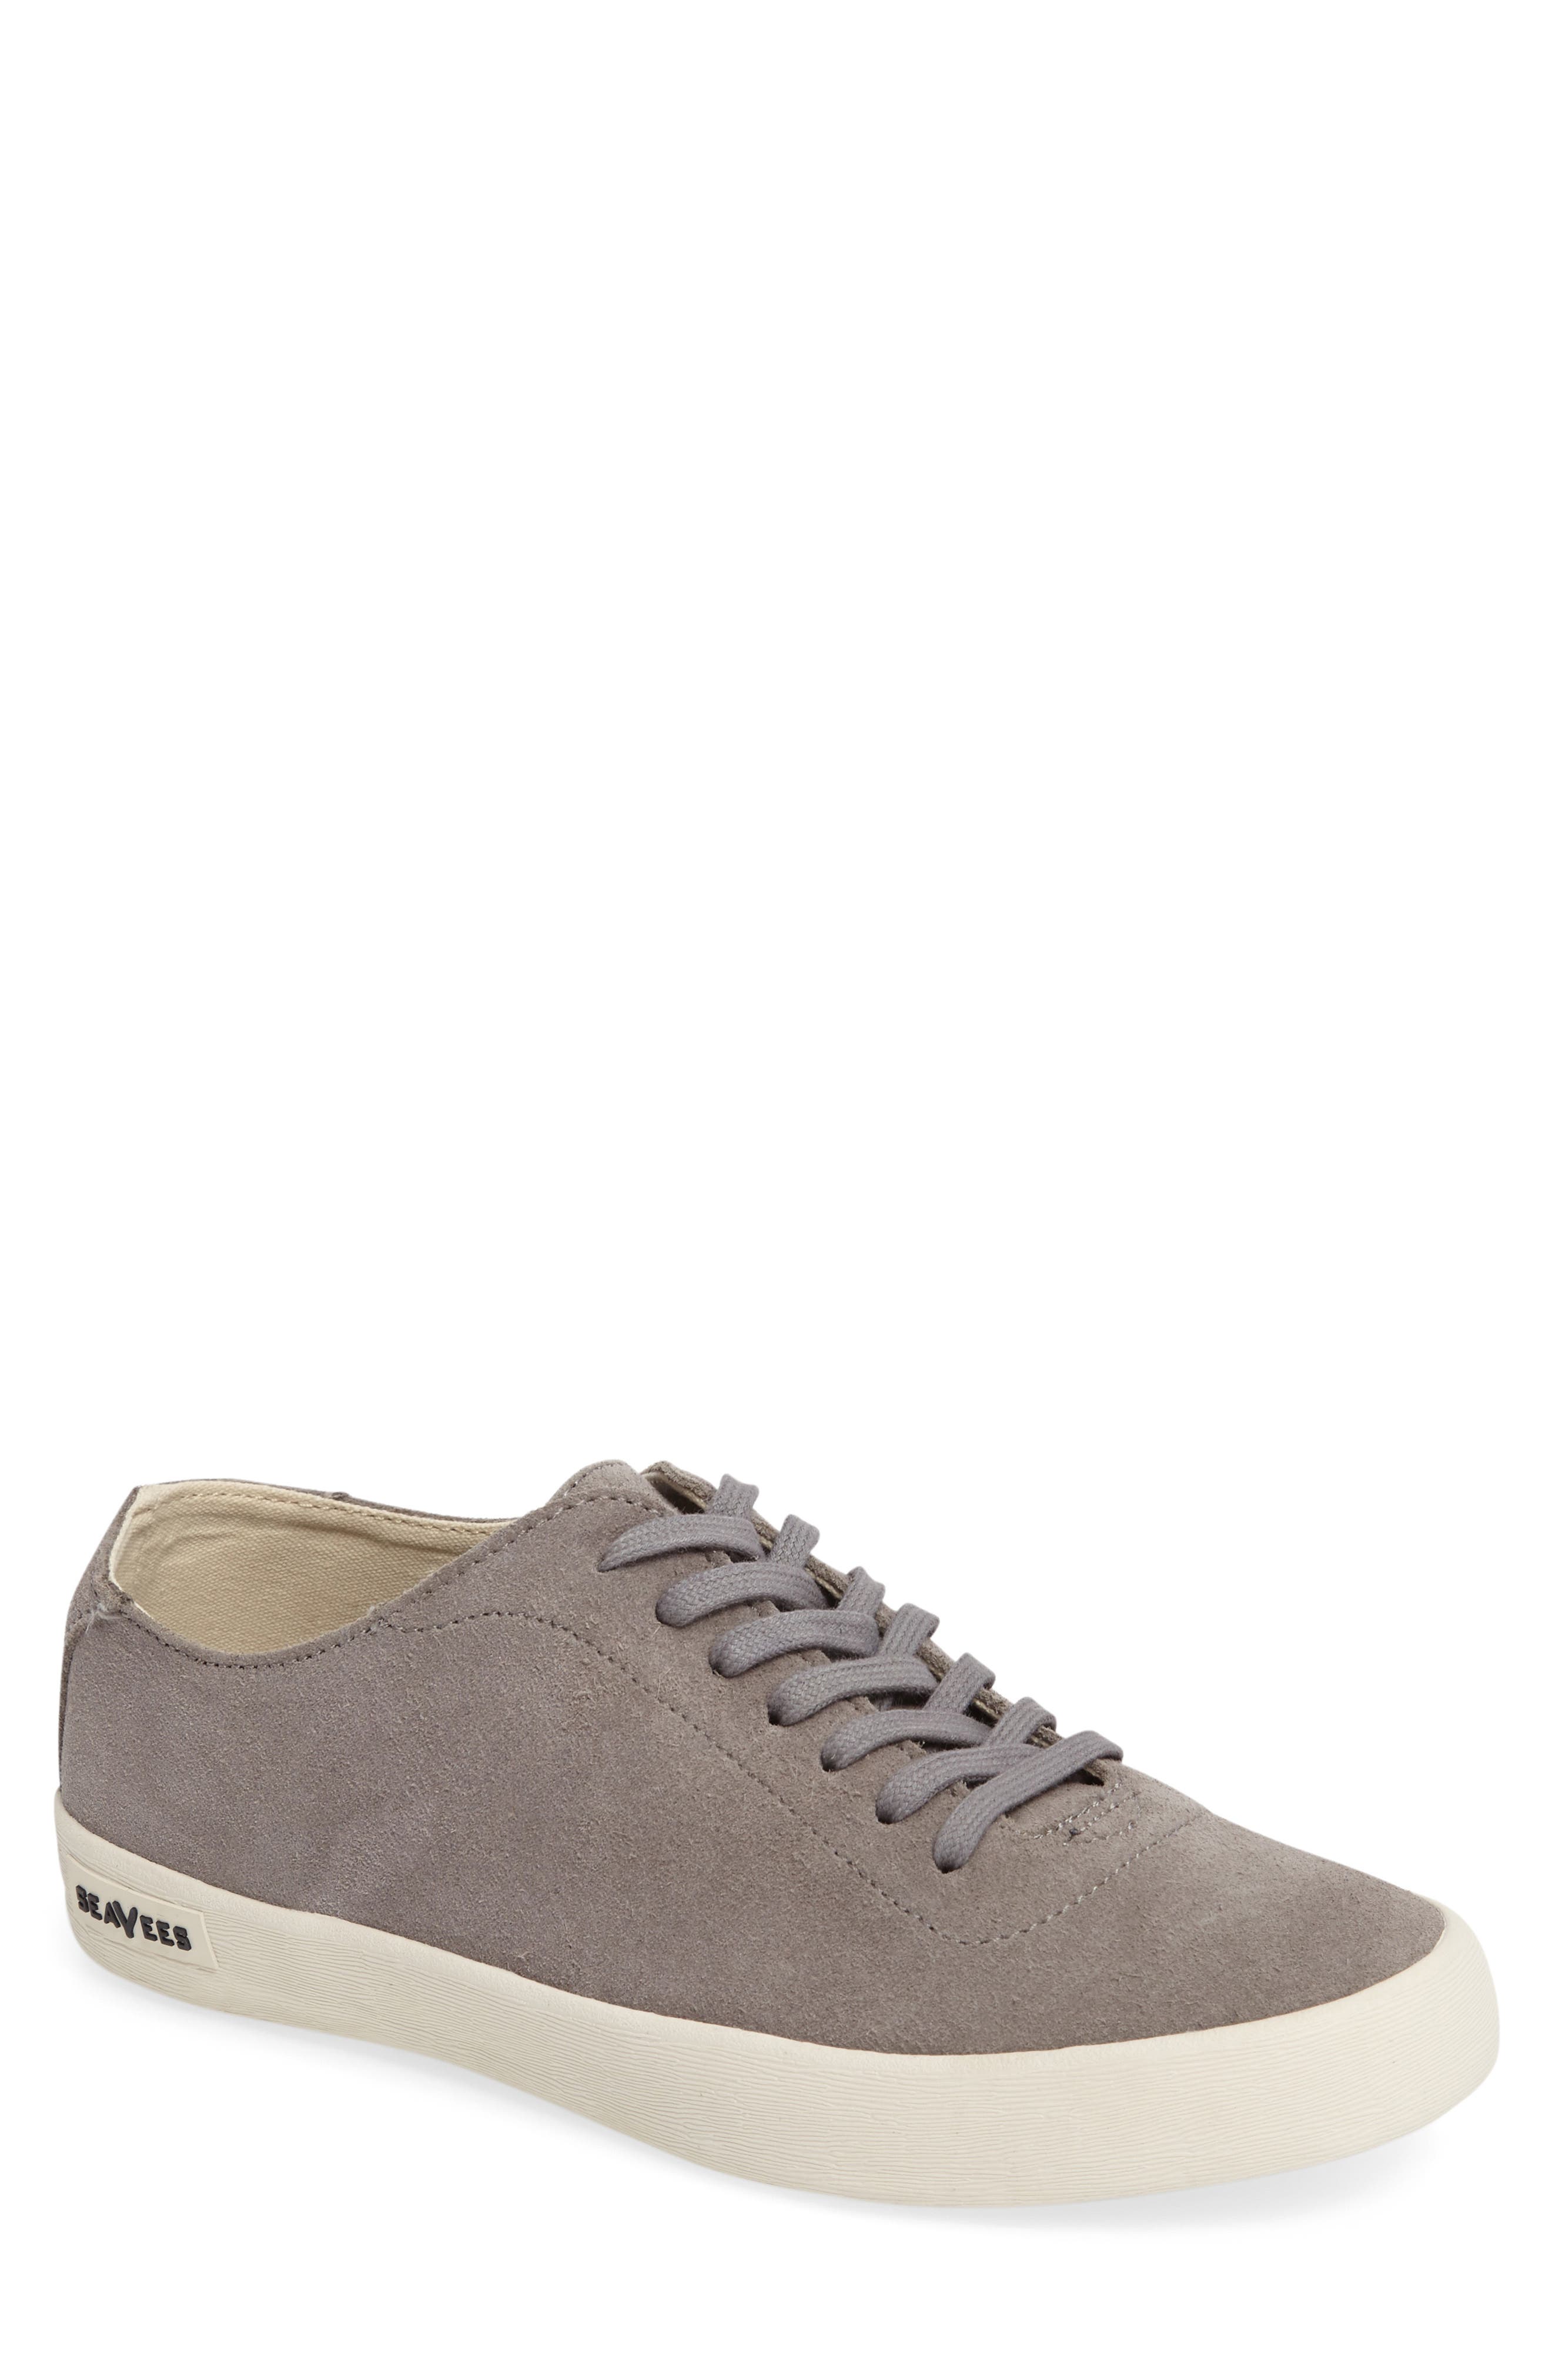 Seavees Racquet Suede Club Sneaker In Medium Grey6